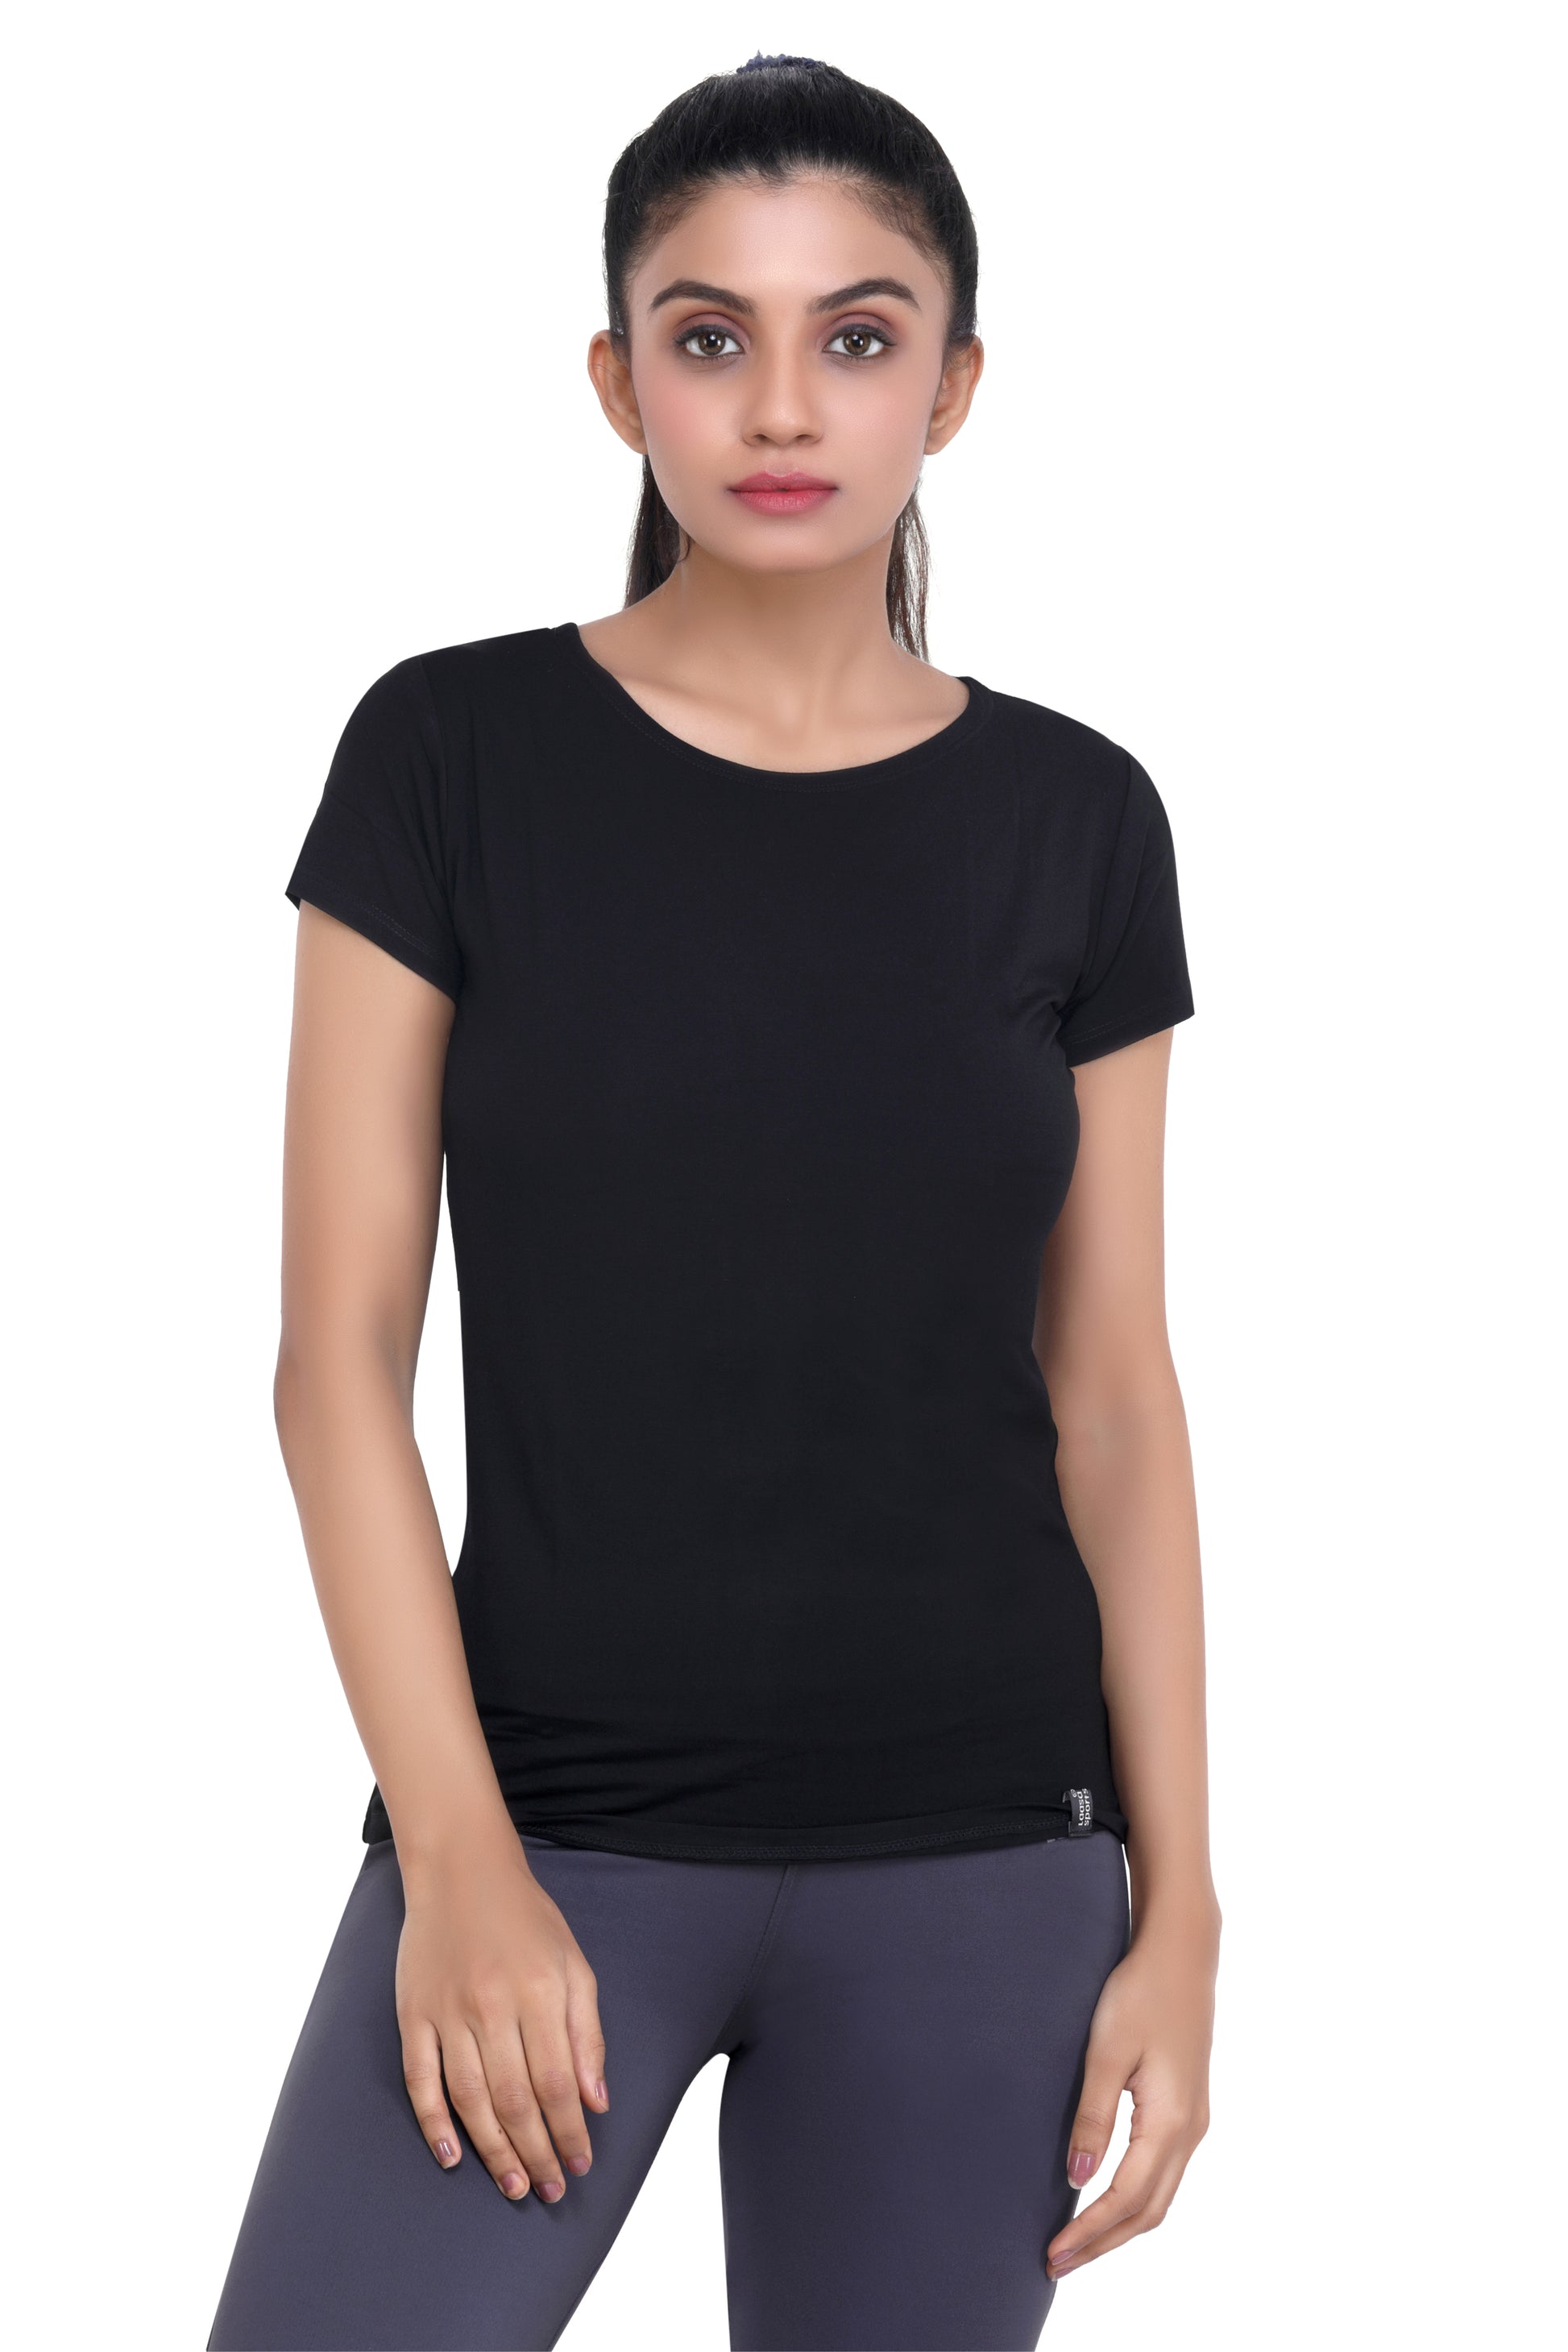 Buy LAASA SPORTS Women Navy Blue Slim Fit T Shirt - Tshirts for